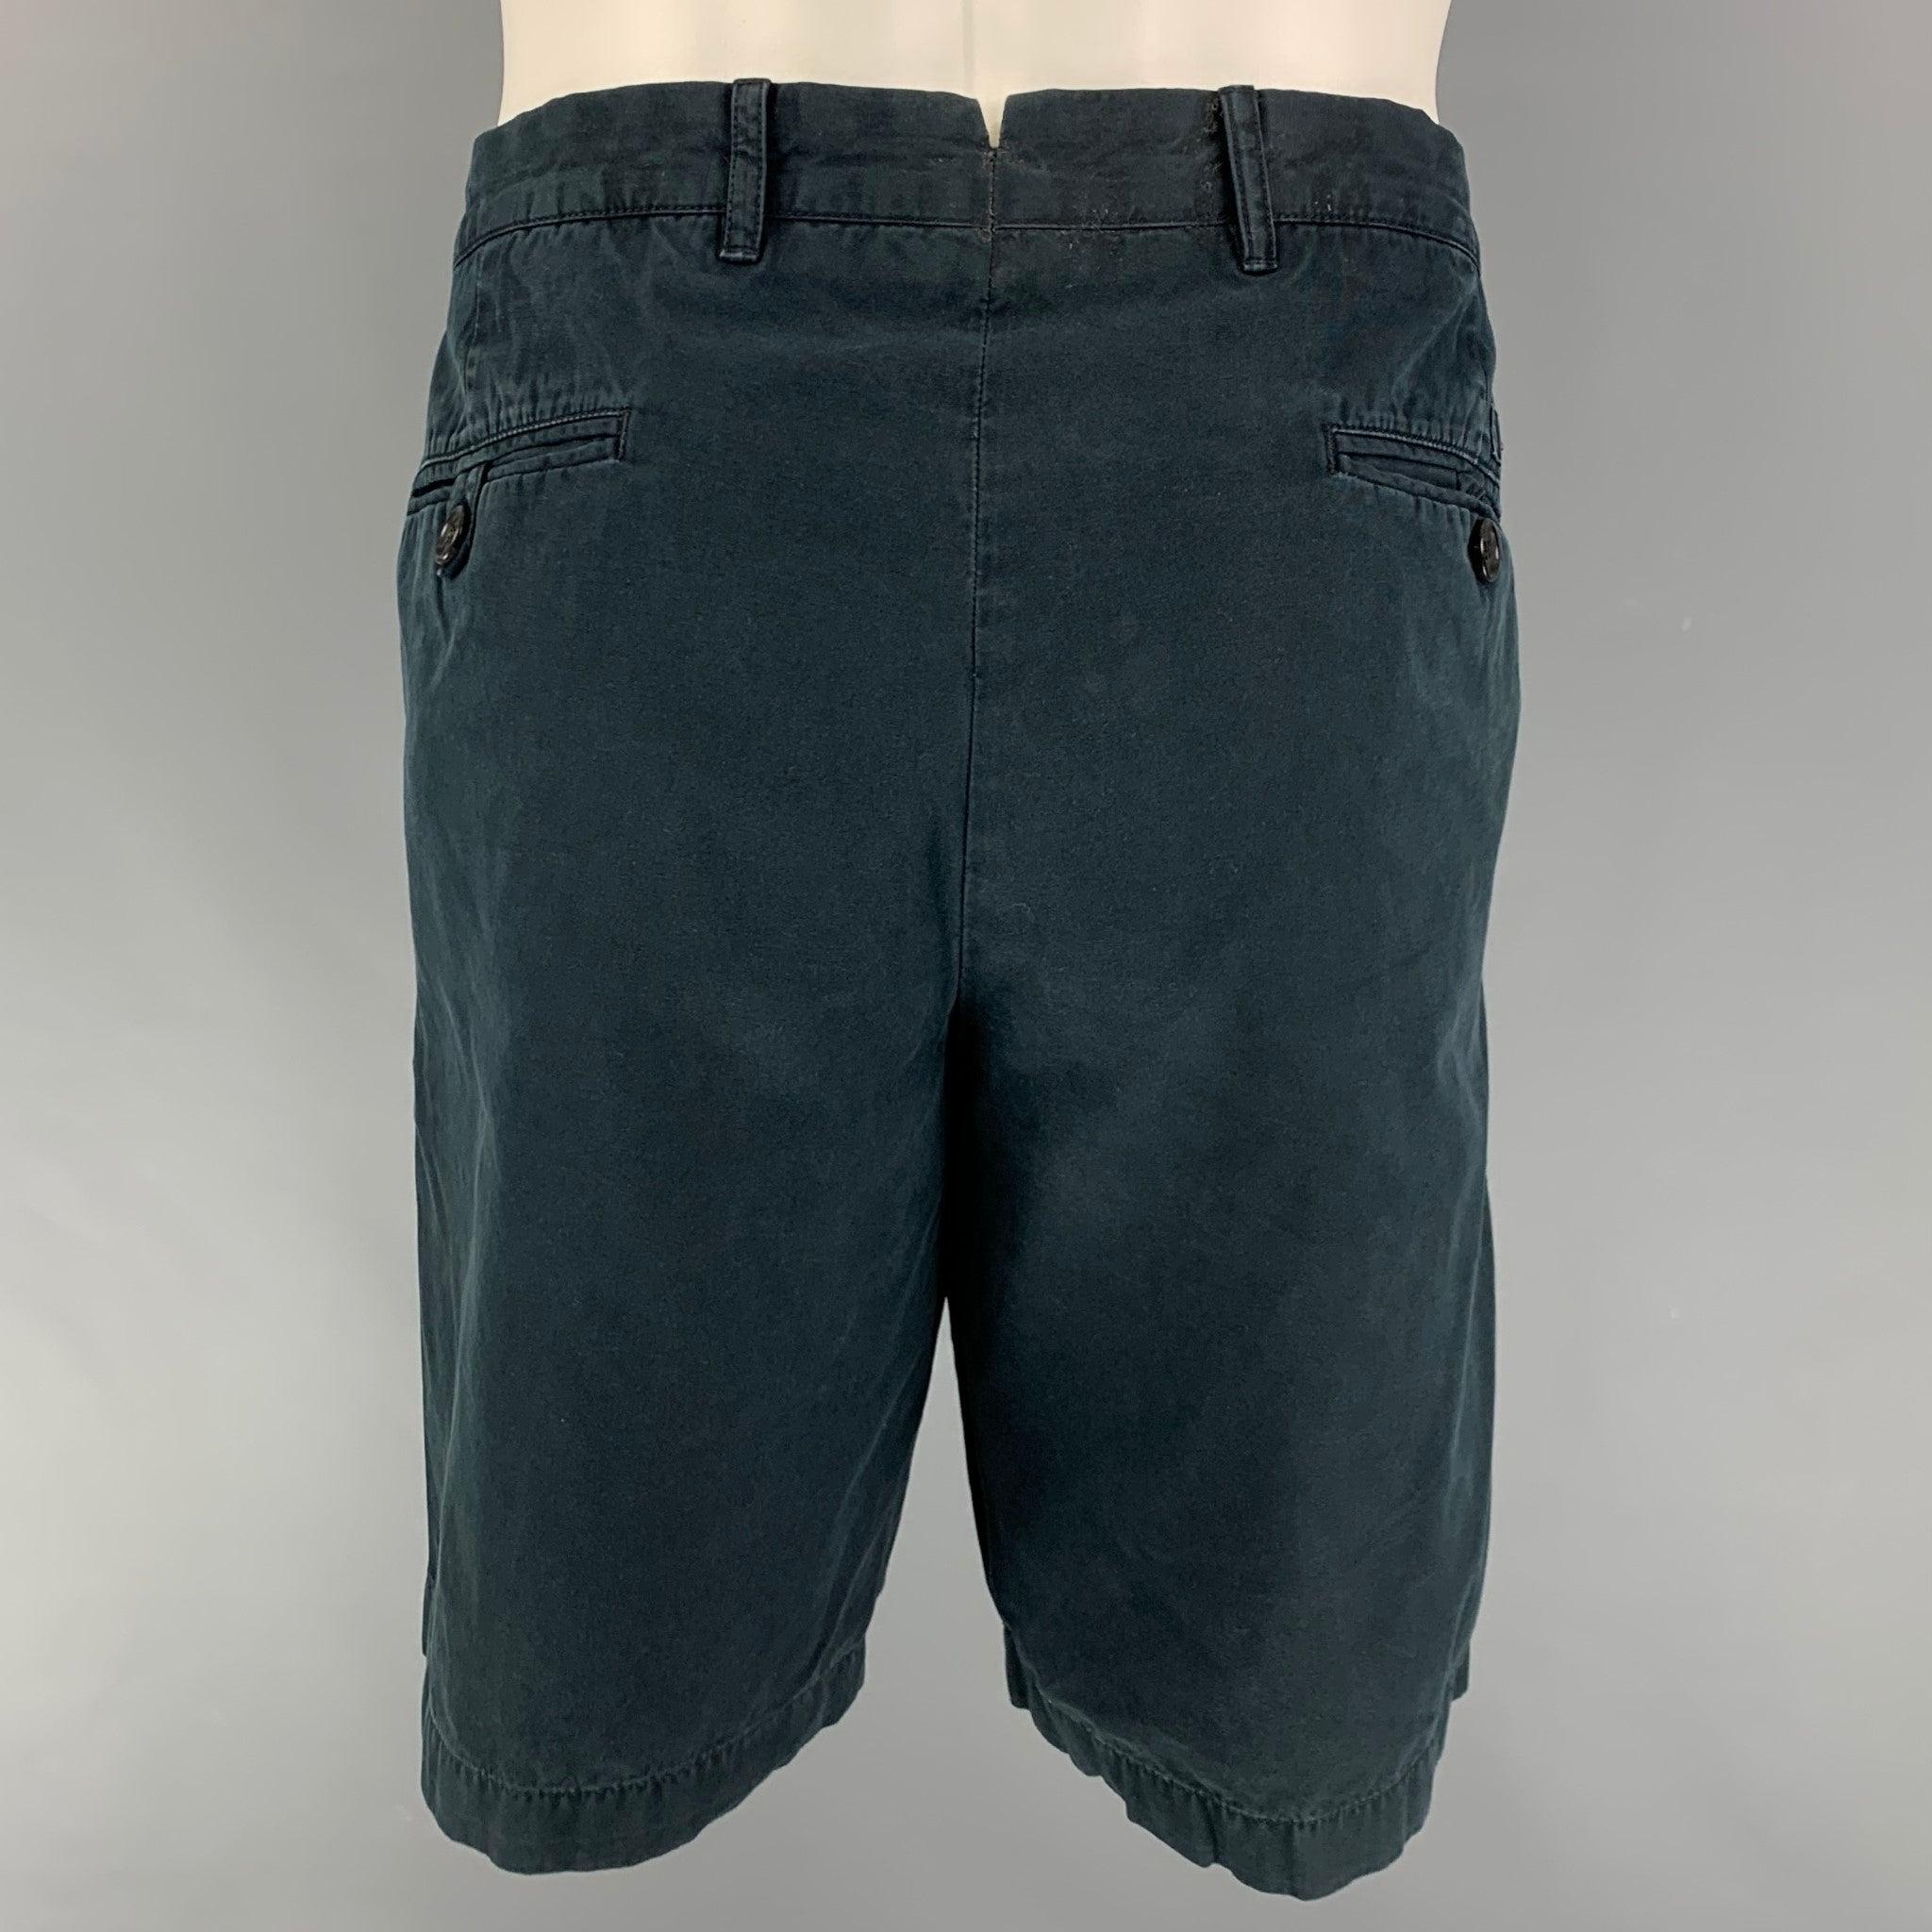 PRADA Shorts aus marineblauer Baumwolle mit Reißverschluss.
Gut
Gebrauchtes Zustand. Fehlendes Reißverschluss-Detail. Wie es ist.  

Markiert:   54 

Abmessungen: 
  Taille: 36 Zoll  Steigung: 9,5 Zoll  Innennaht: 10 Zoll 
  
  
 
Referenz: